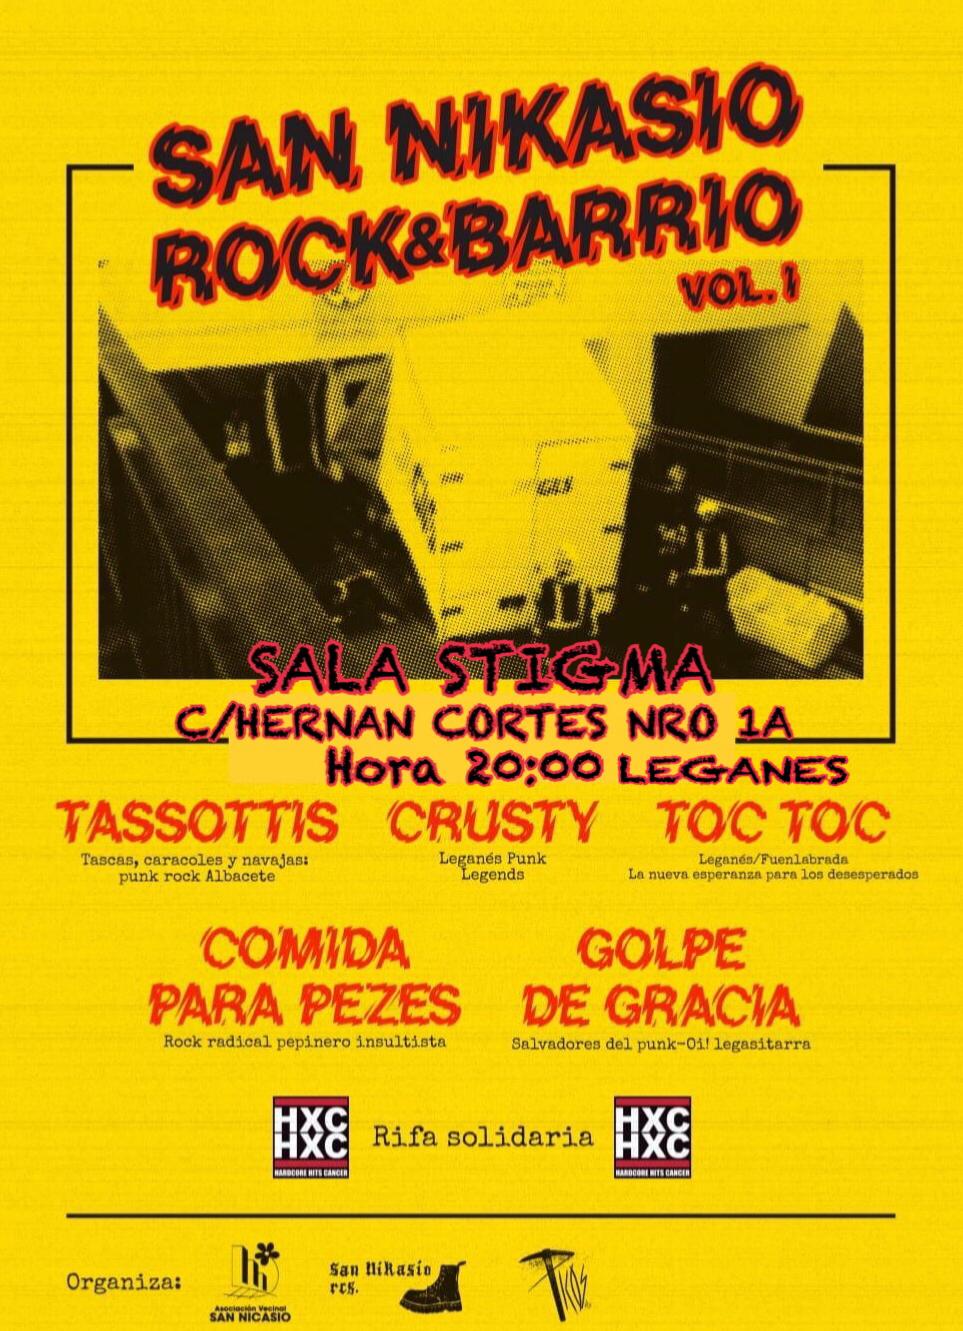 Rock & Barrio, Vol 1 ( Leganés, Madrid.  21/09)